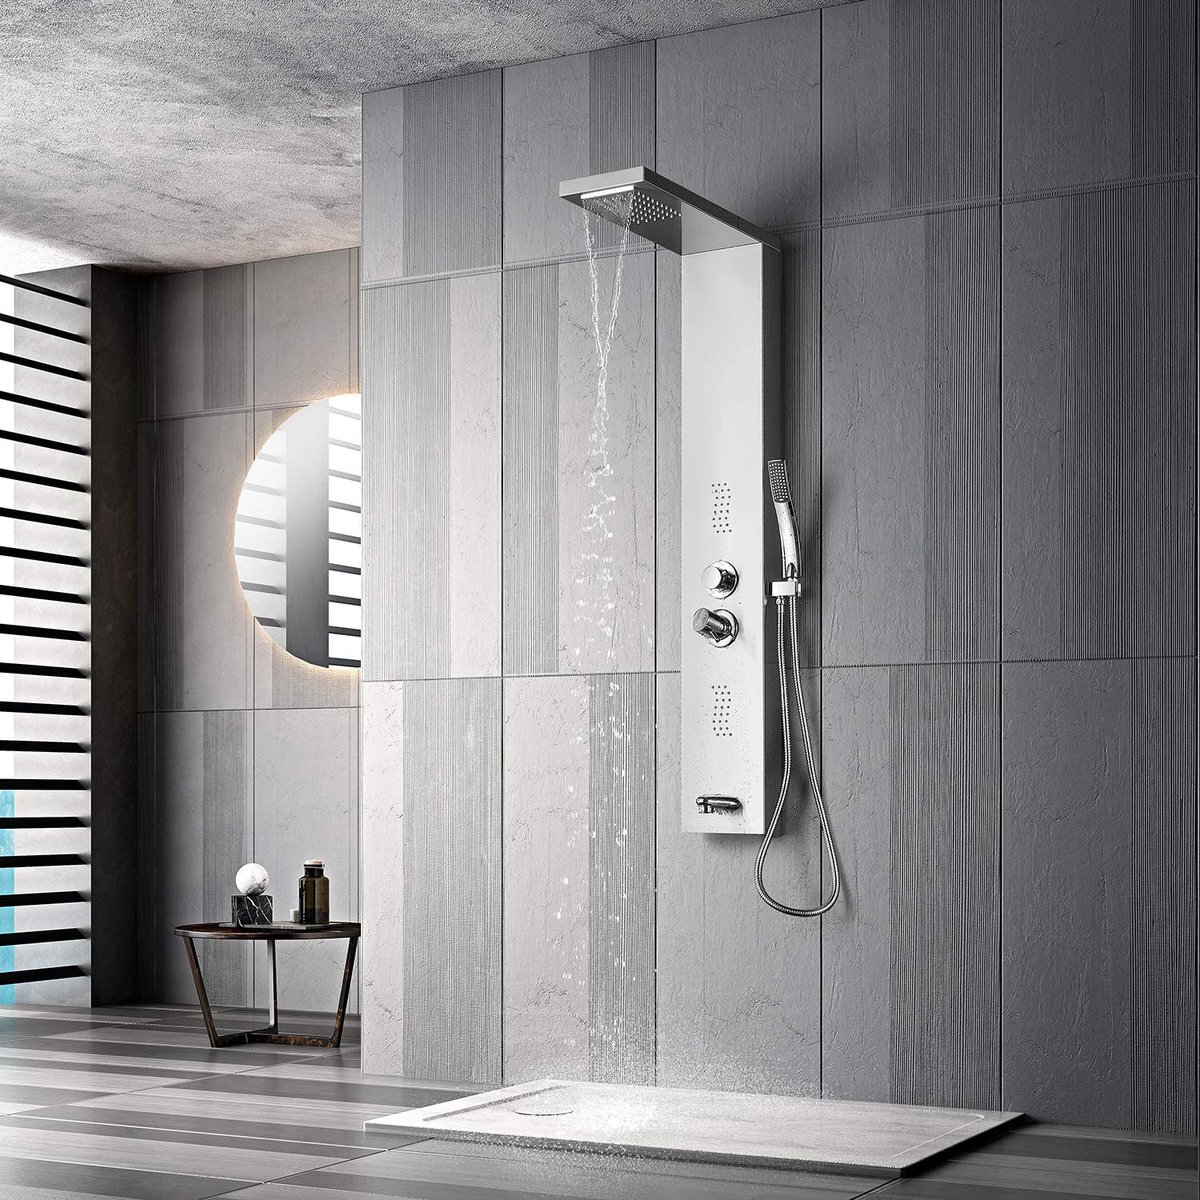 Best shower panel system - Recommendation and Buyer guide
bestbathroom.org/best-shower-pa…

#showerpanelsystem #bathroomdesign #modernbathroom #homedecor #showerremodel #homedesign #rainfallshower #waterfallshower